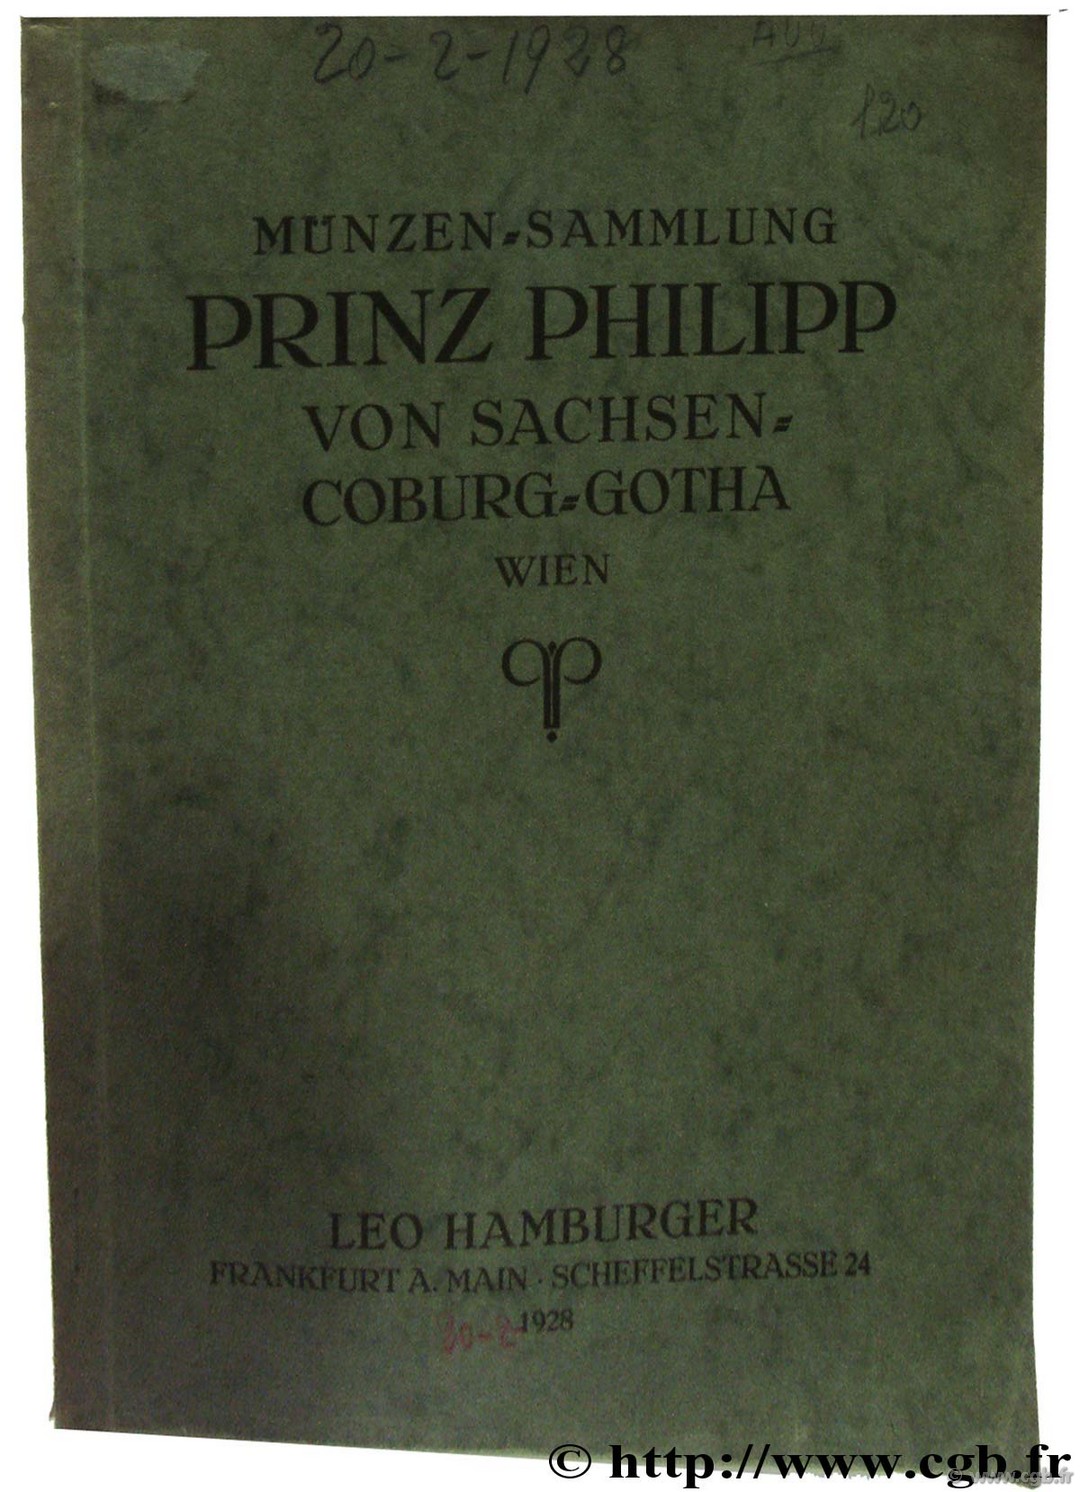 Munzen-Sammlung Prinz Philipp von sachsen Coburg-Gotha HAMBURGER L.